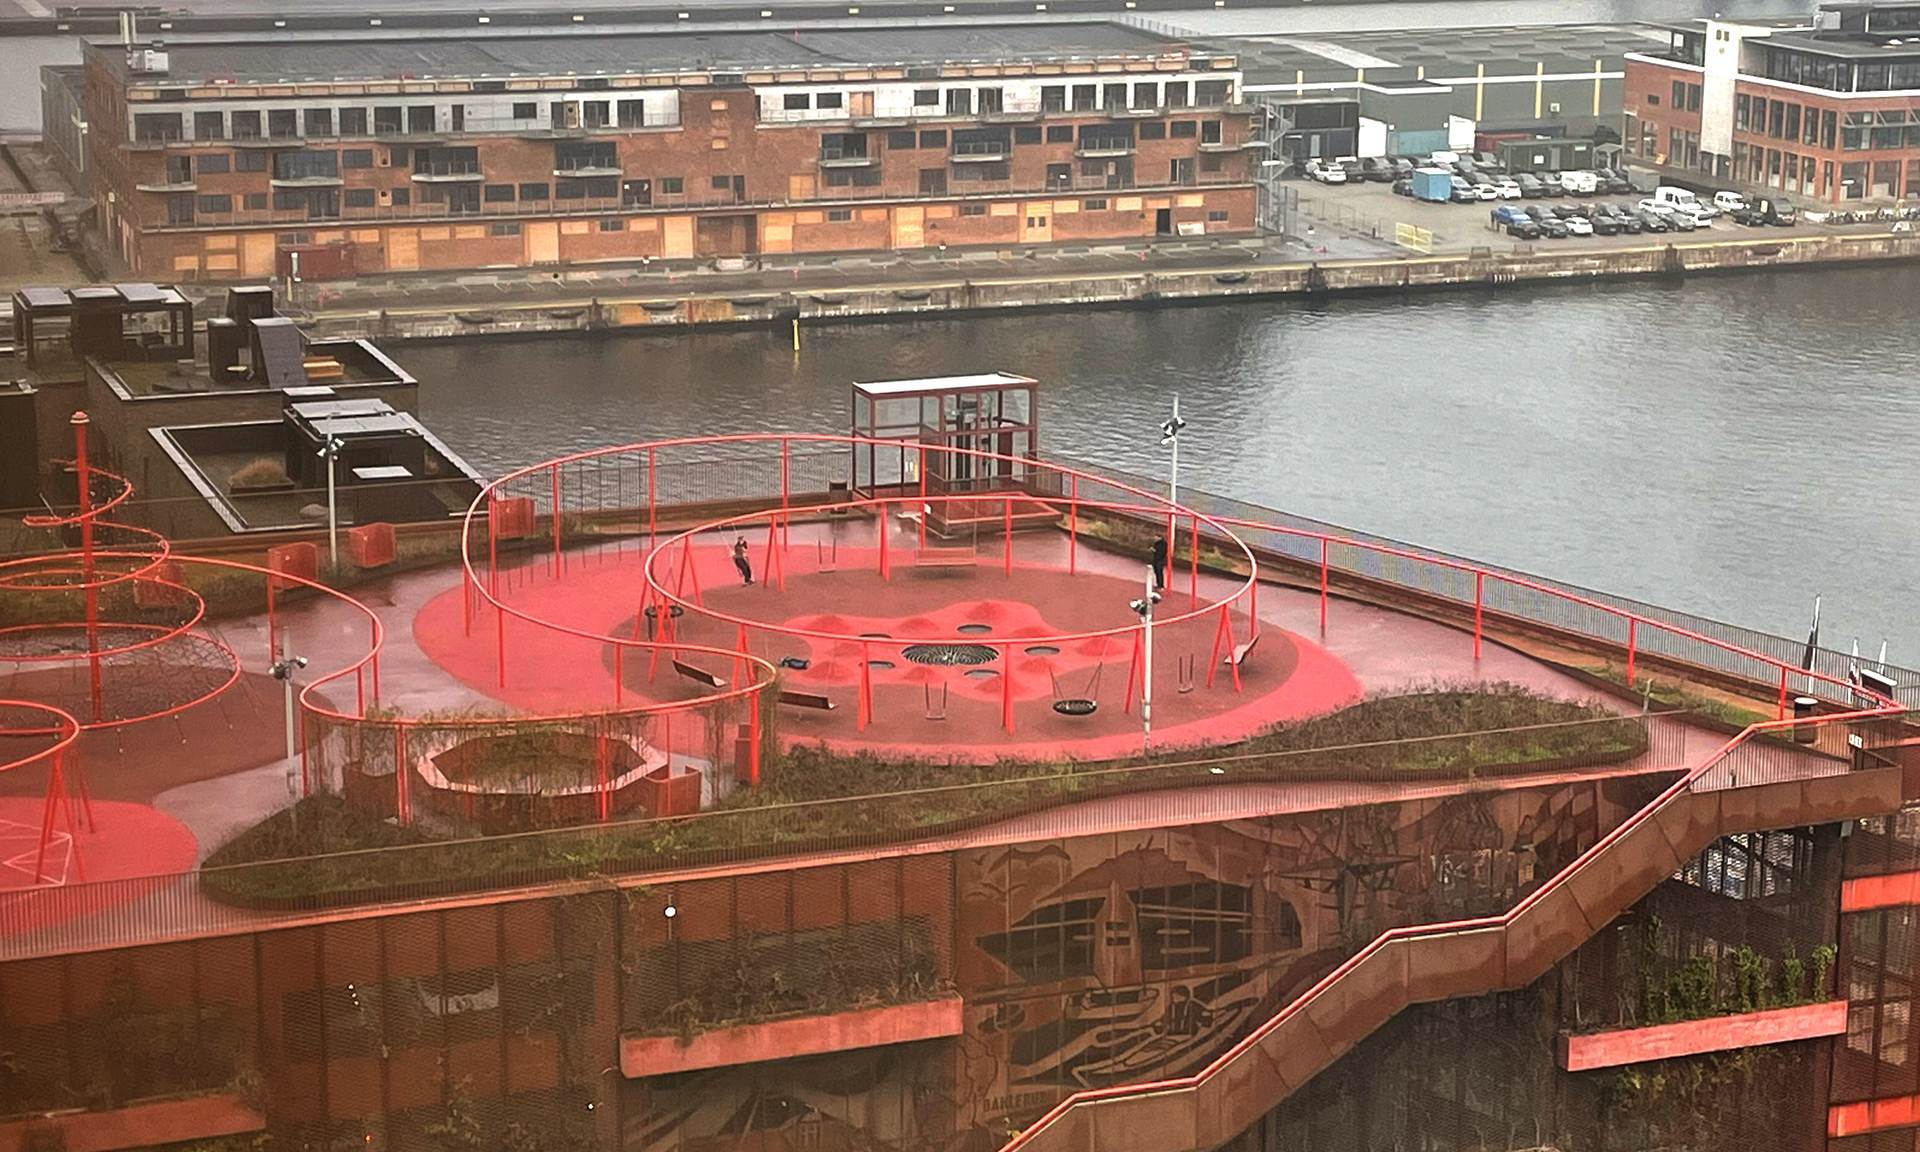 Der Spielplatz Park’n’Play erstreckt sich in leuchtendem Rot über der Hafenkulisse Kopenhagens.